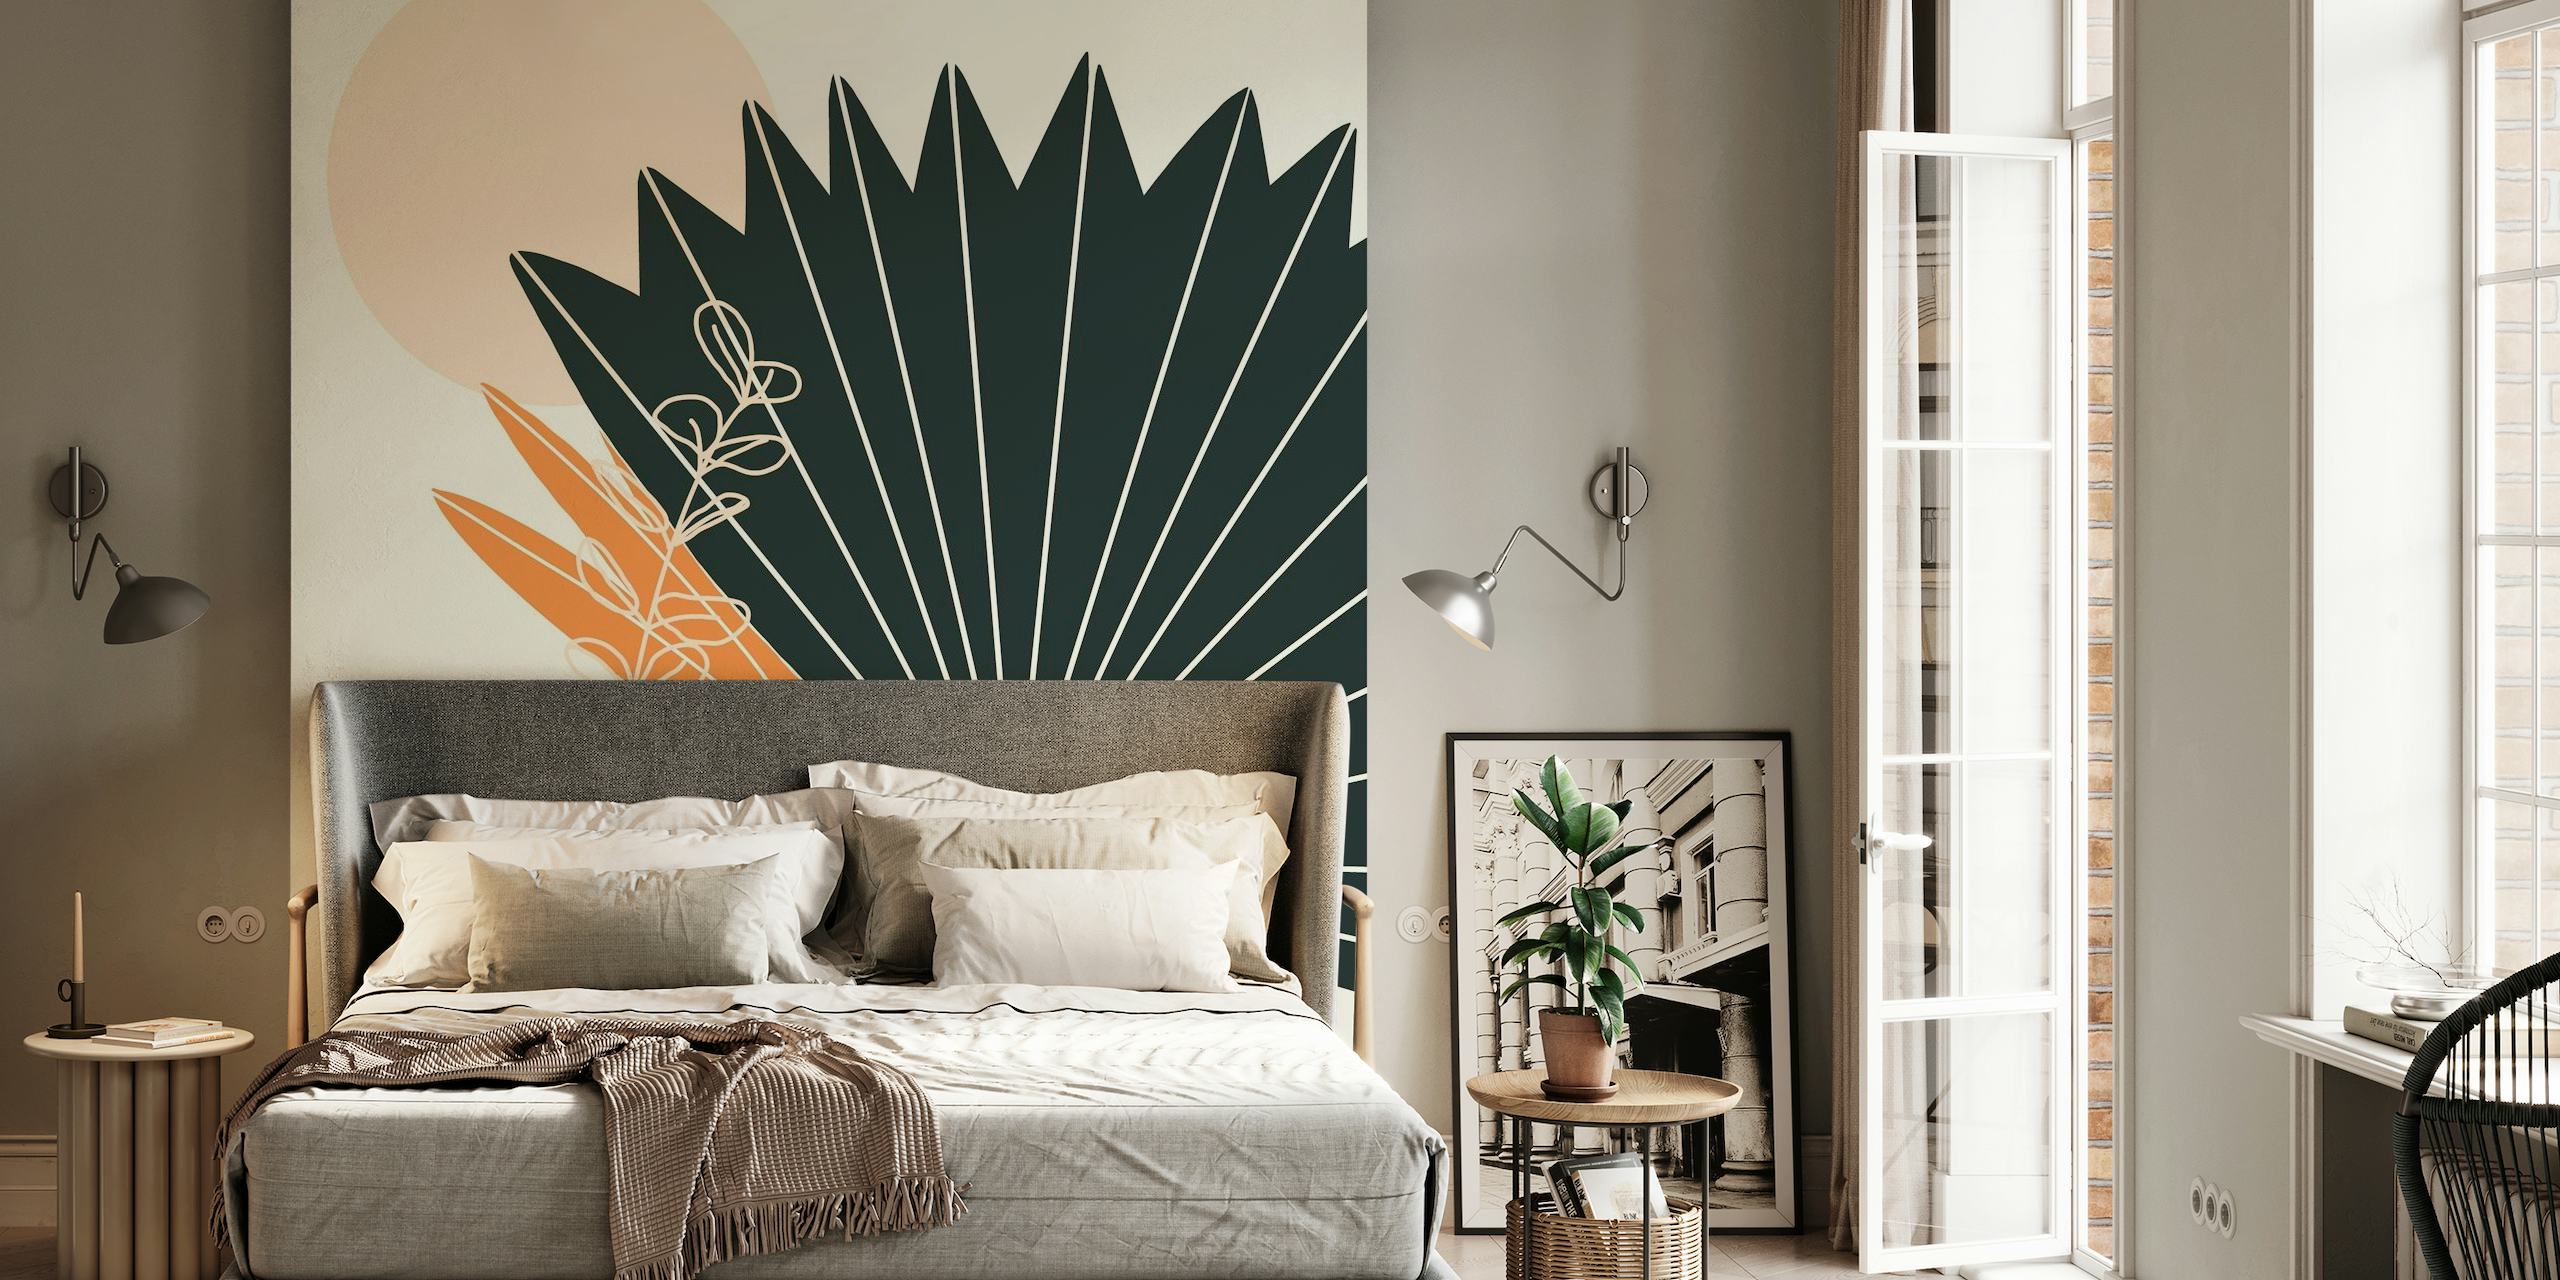 Abstrakt veggmaleri med stiliserte palmeblader og håndverksvase i jordfarger